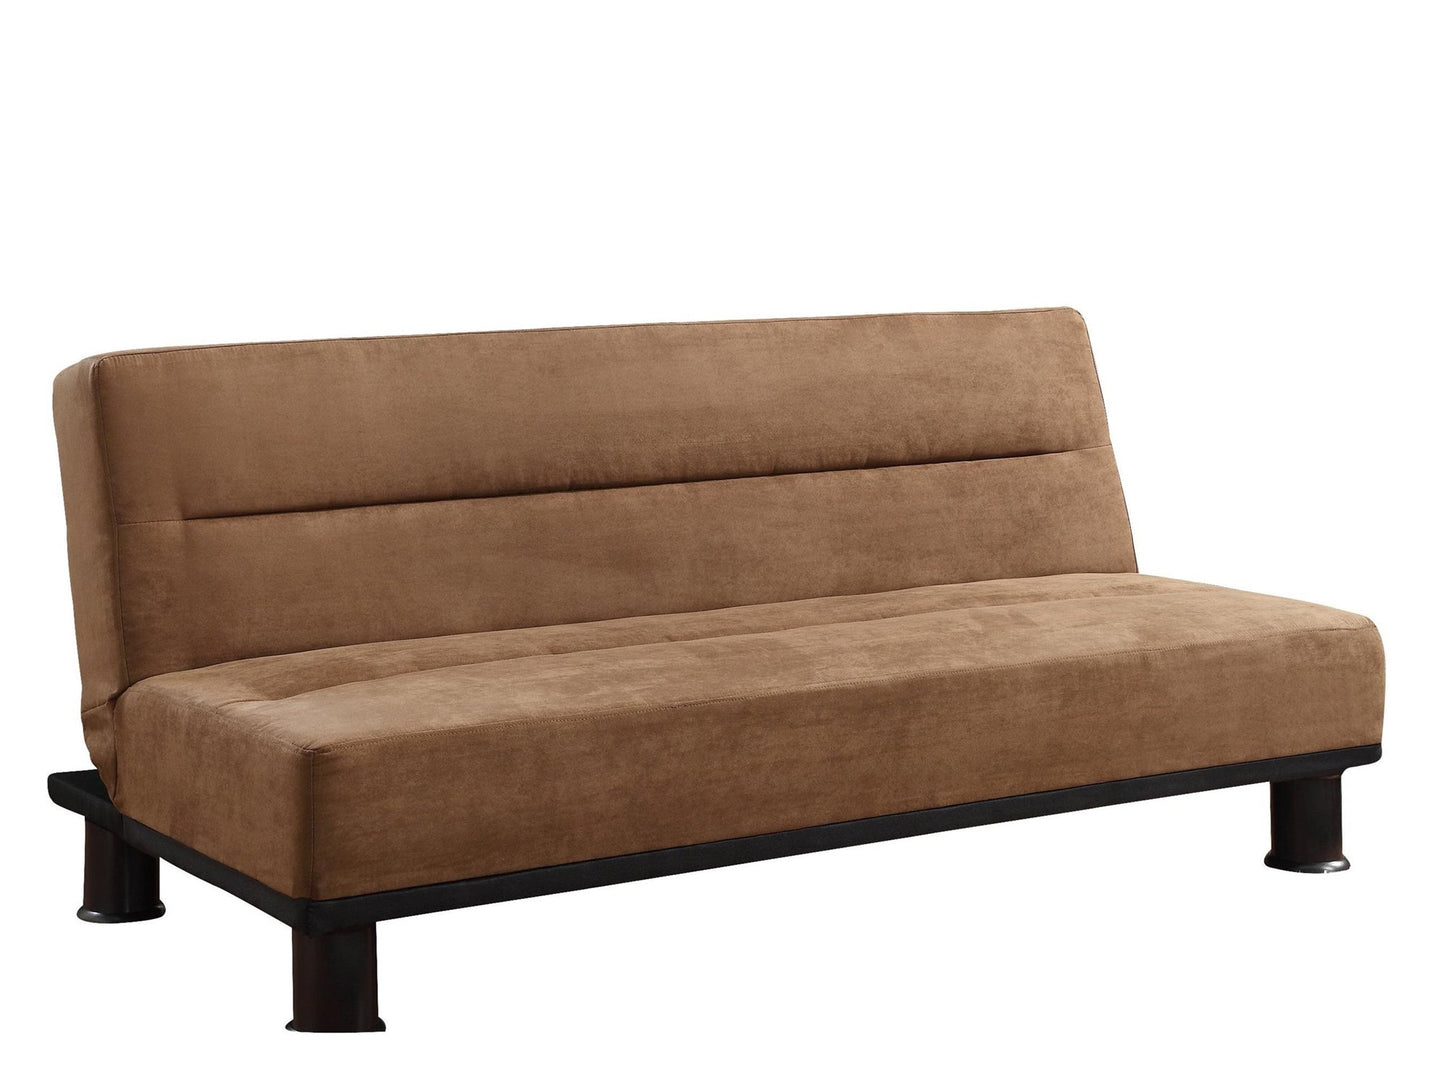 Homelegance Callie Convertible Sofa in Microfiber - Brown